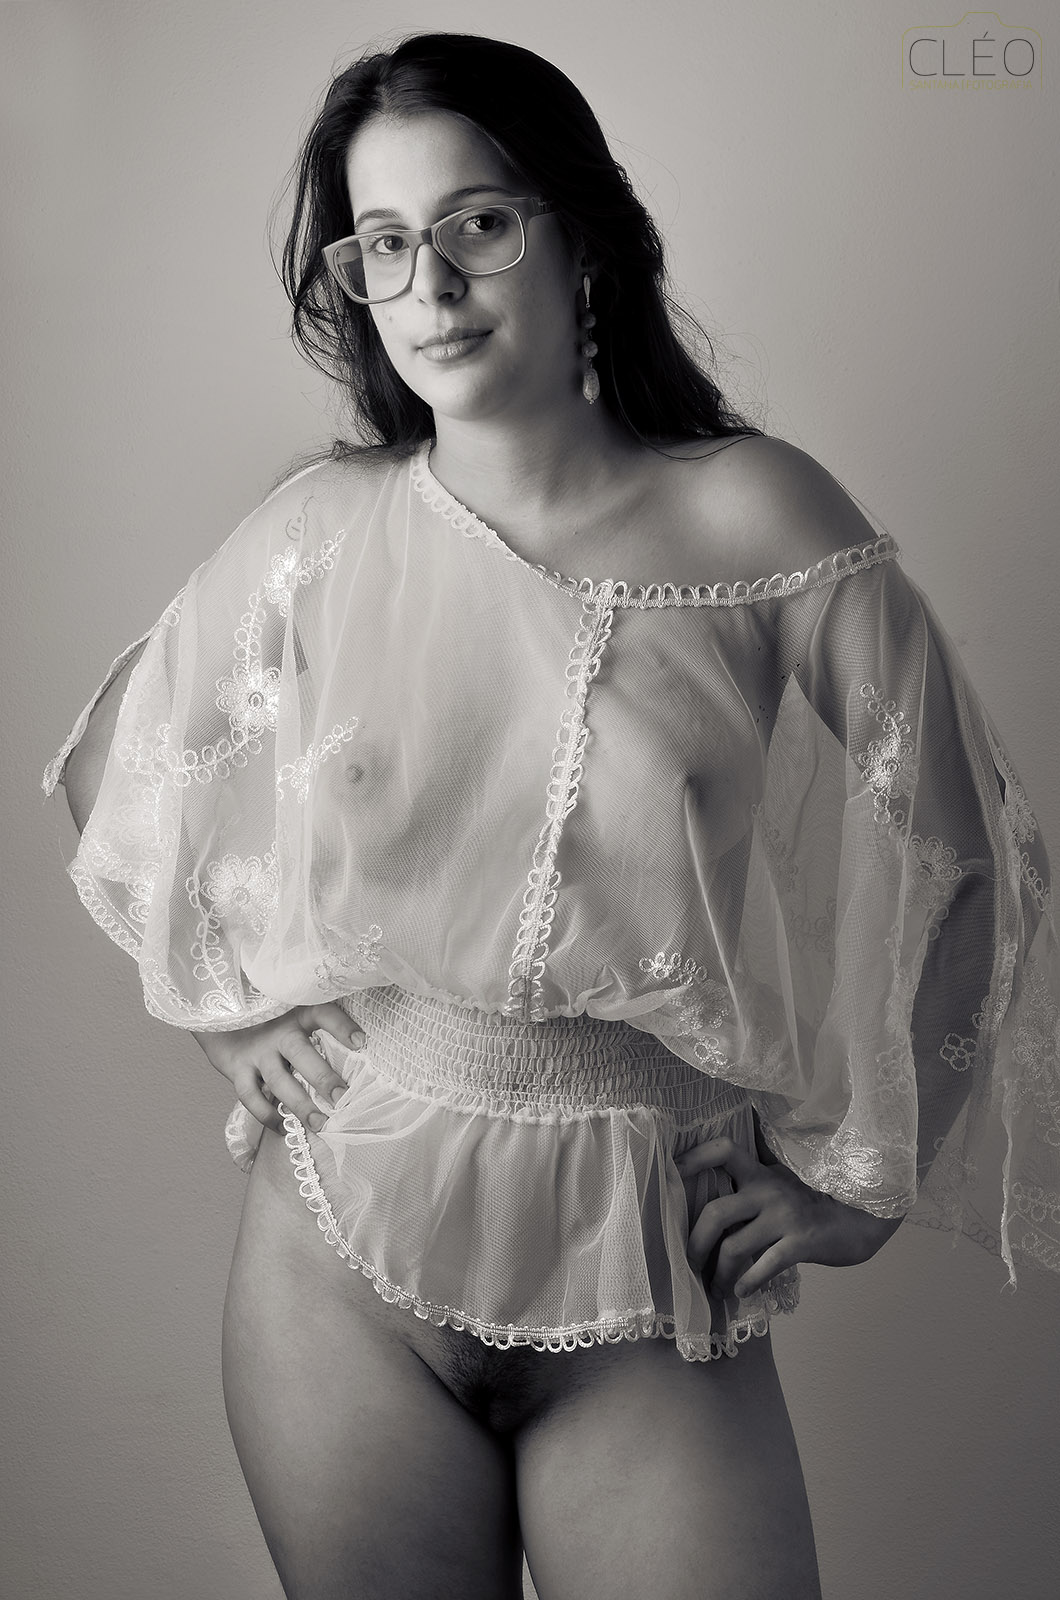 naked natalie nunn nude hot girls wallpaper #glasses  #nerd  #amateurmodel  #seethrutop  #bottomless